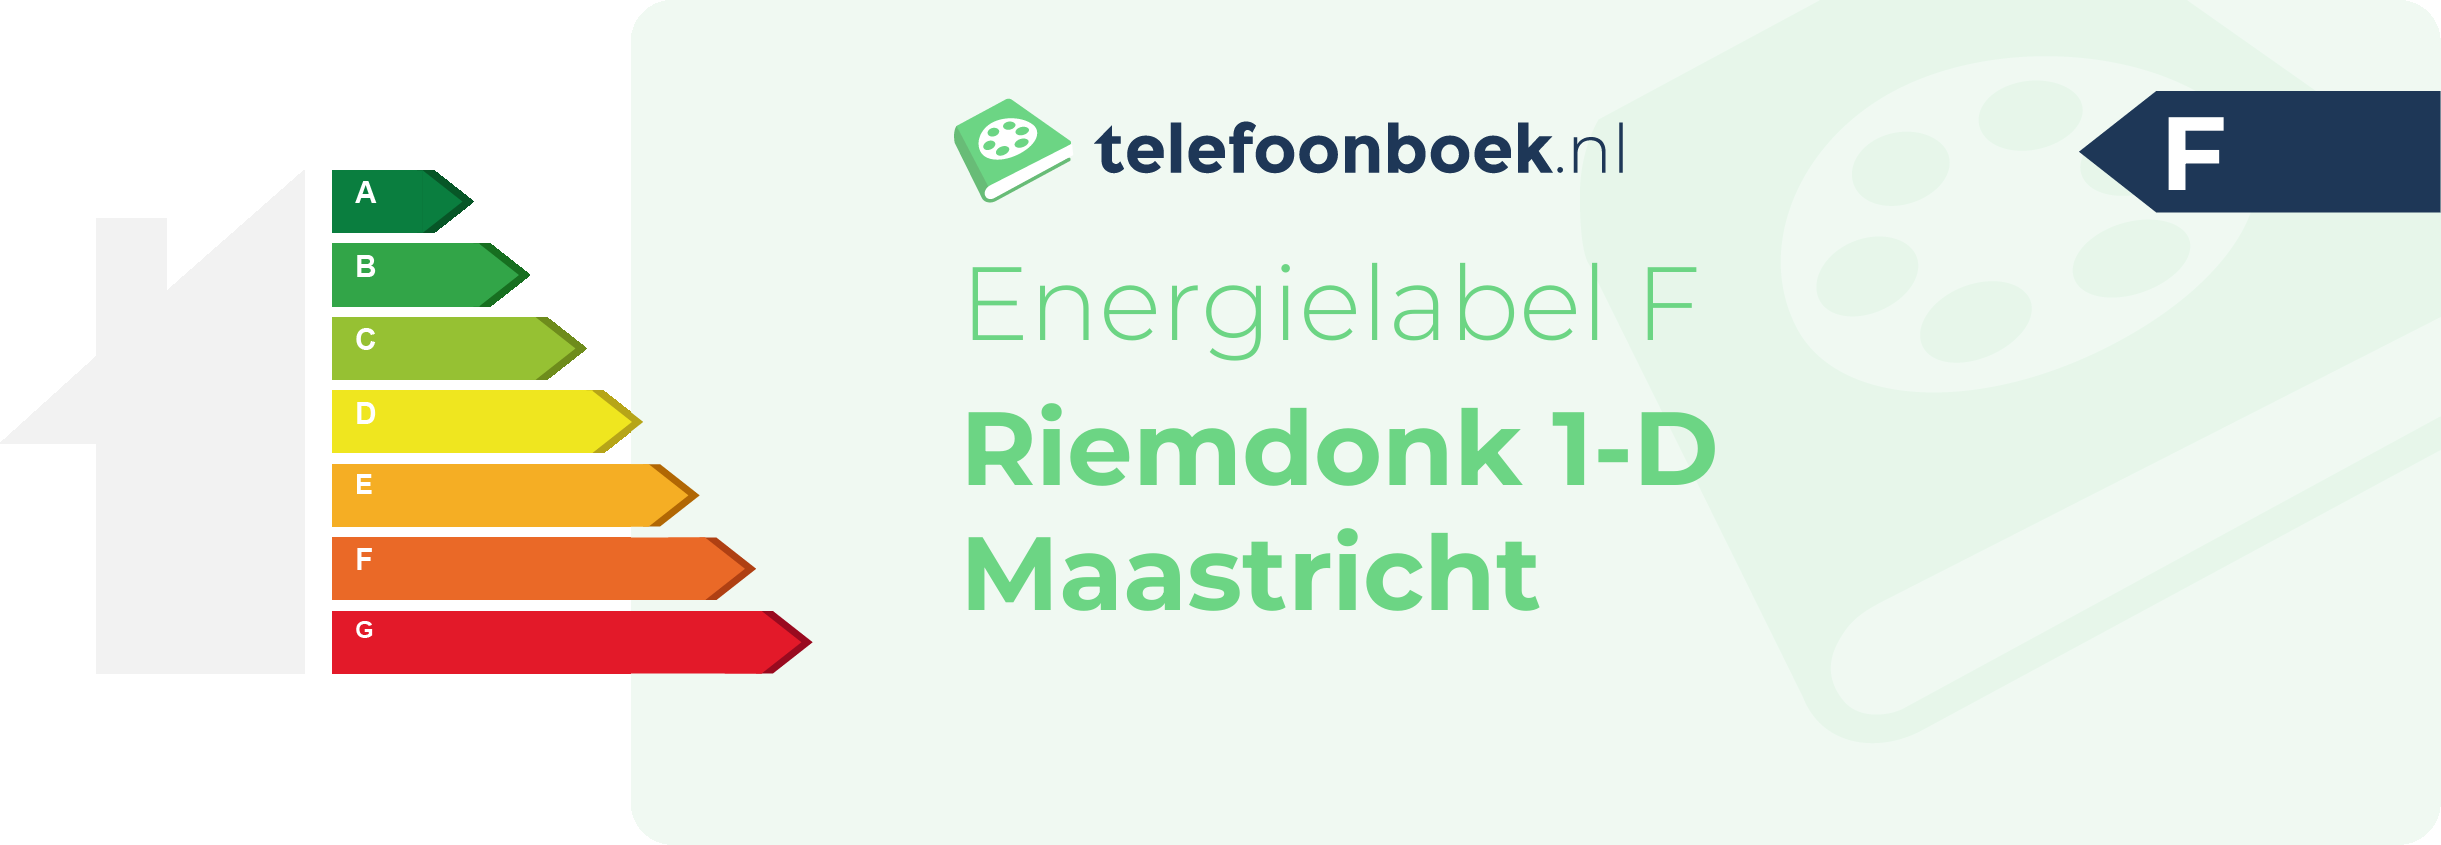 Energielabel Riemdonk 1-D Maastricht